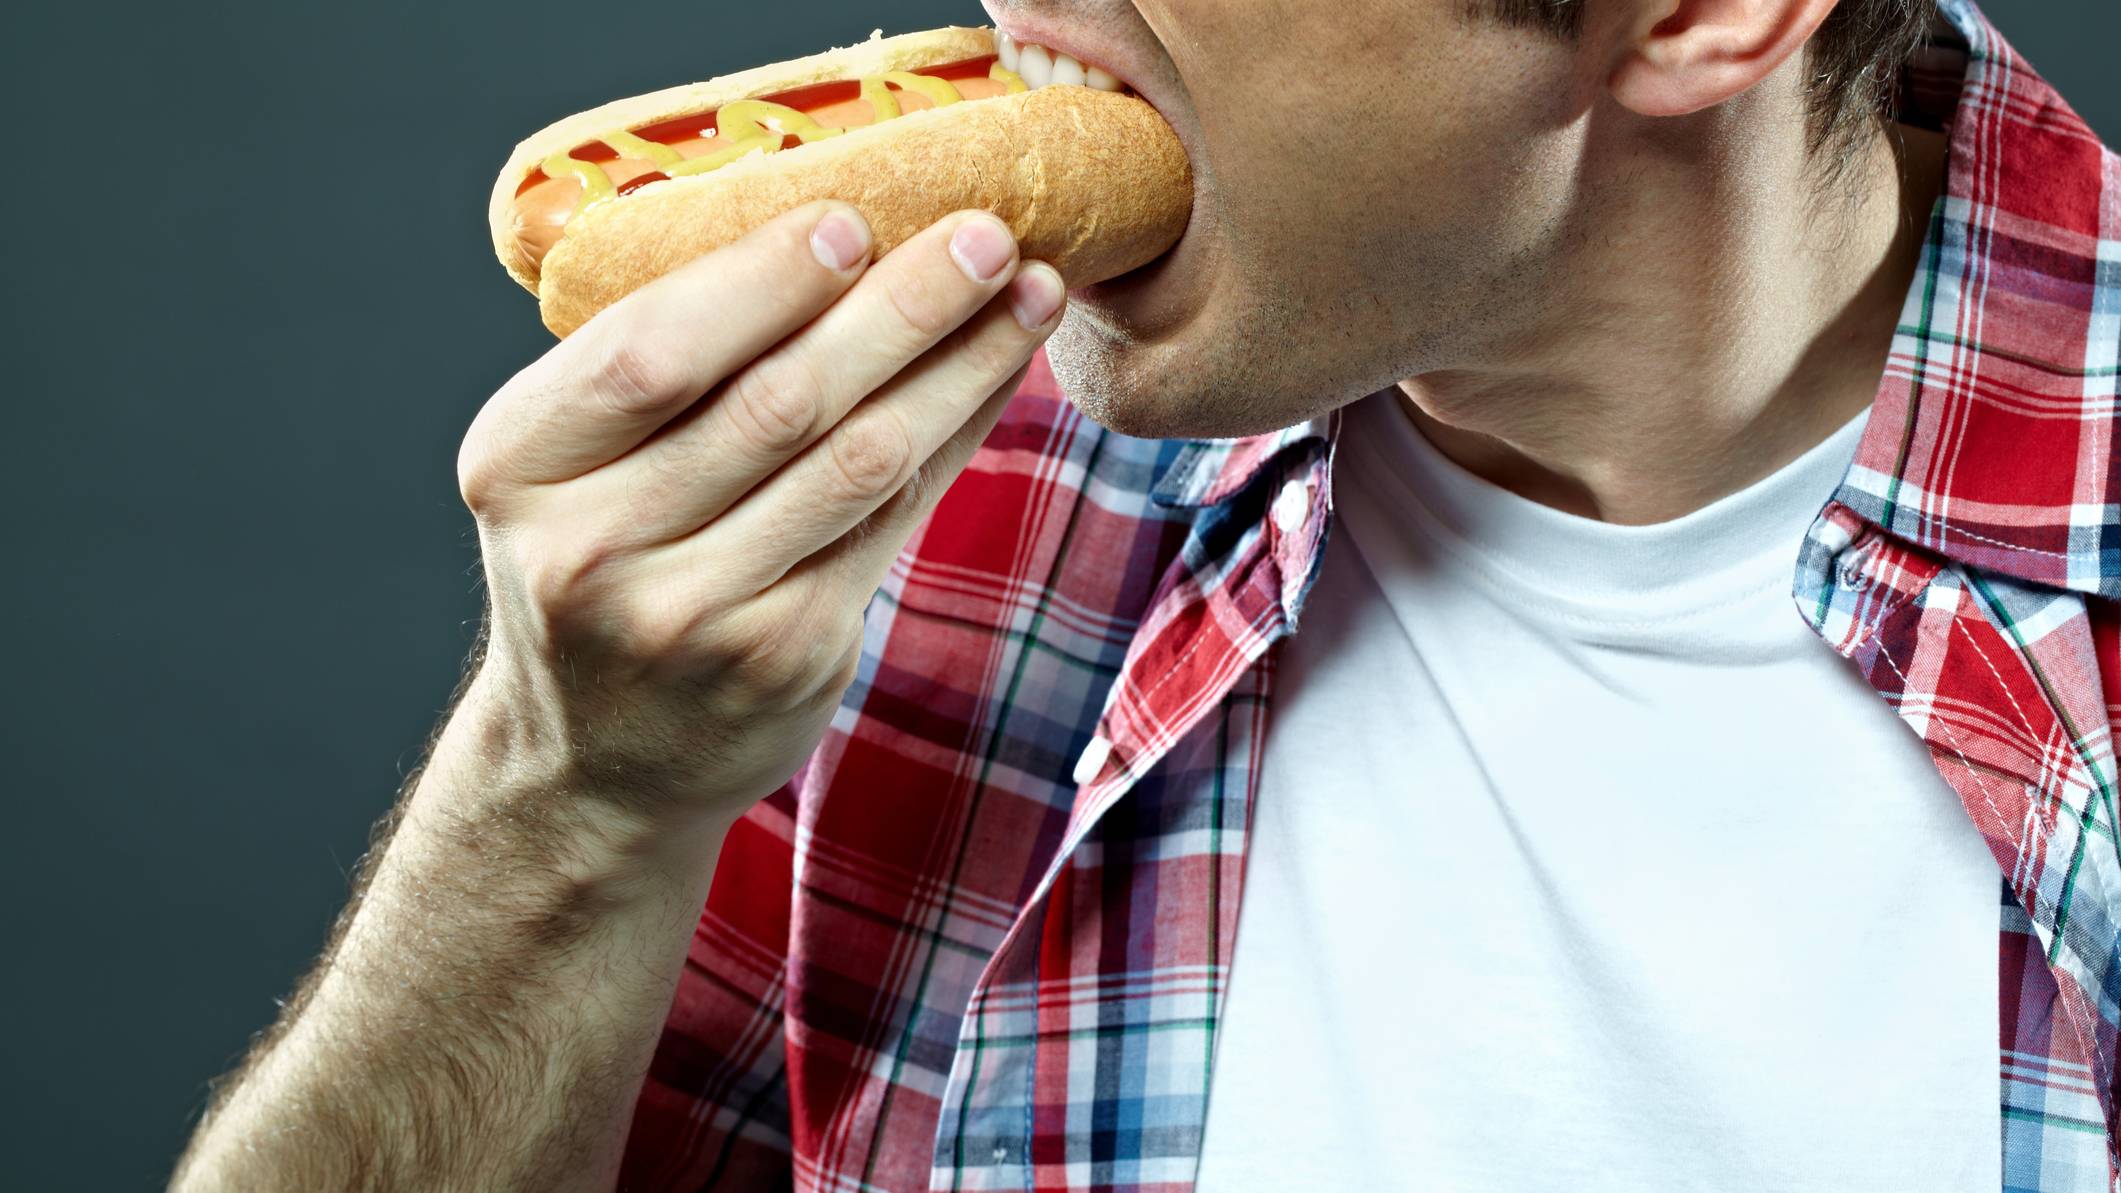 Comer un solo hot dog podría costar 36 minutos de vida saludable